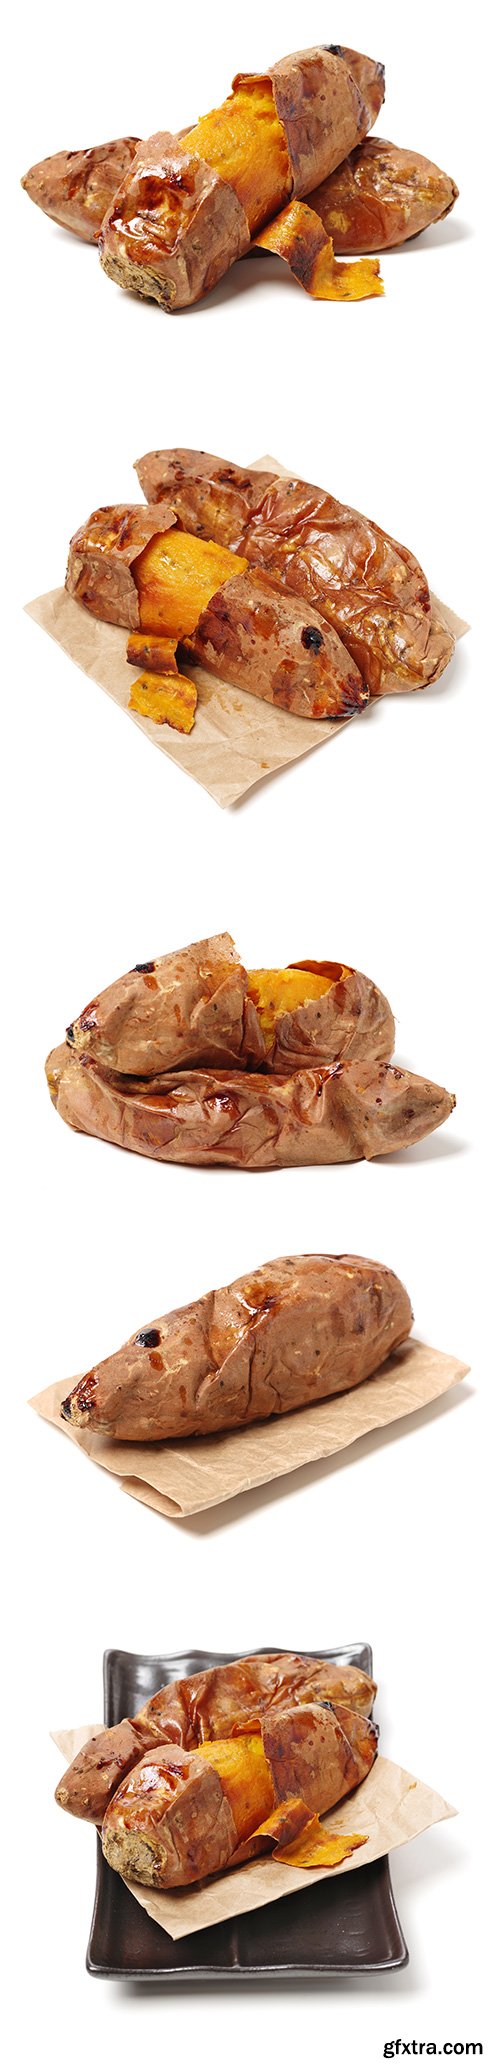 Roasted Sweet Potatoes Isolated - 8xJPGs